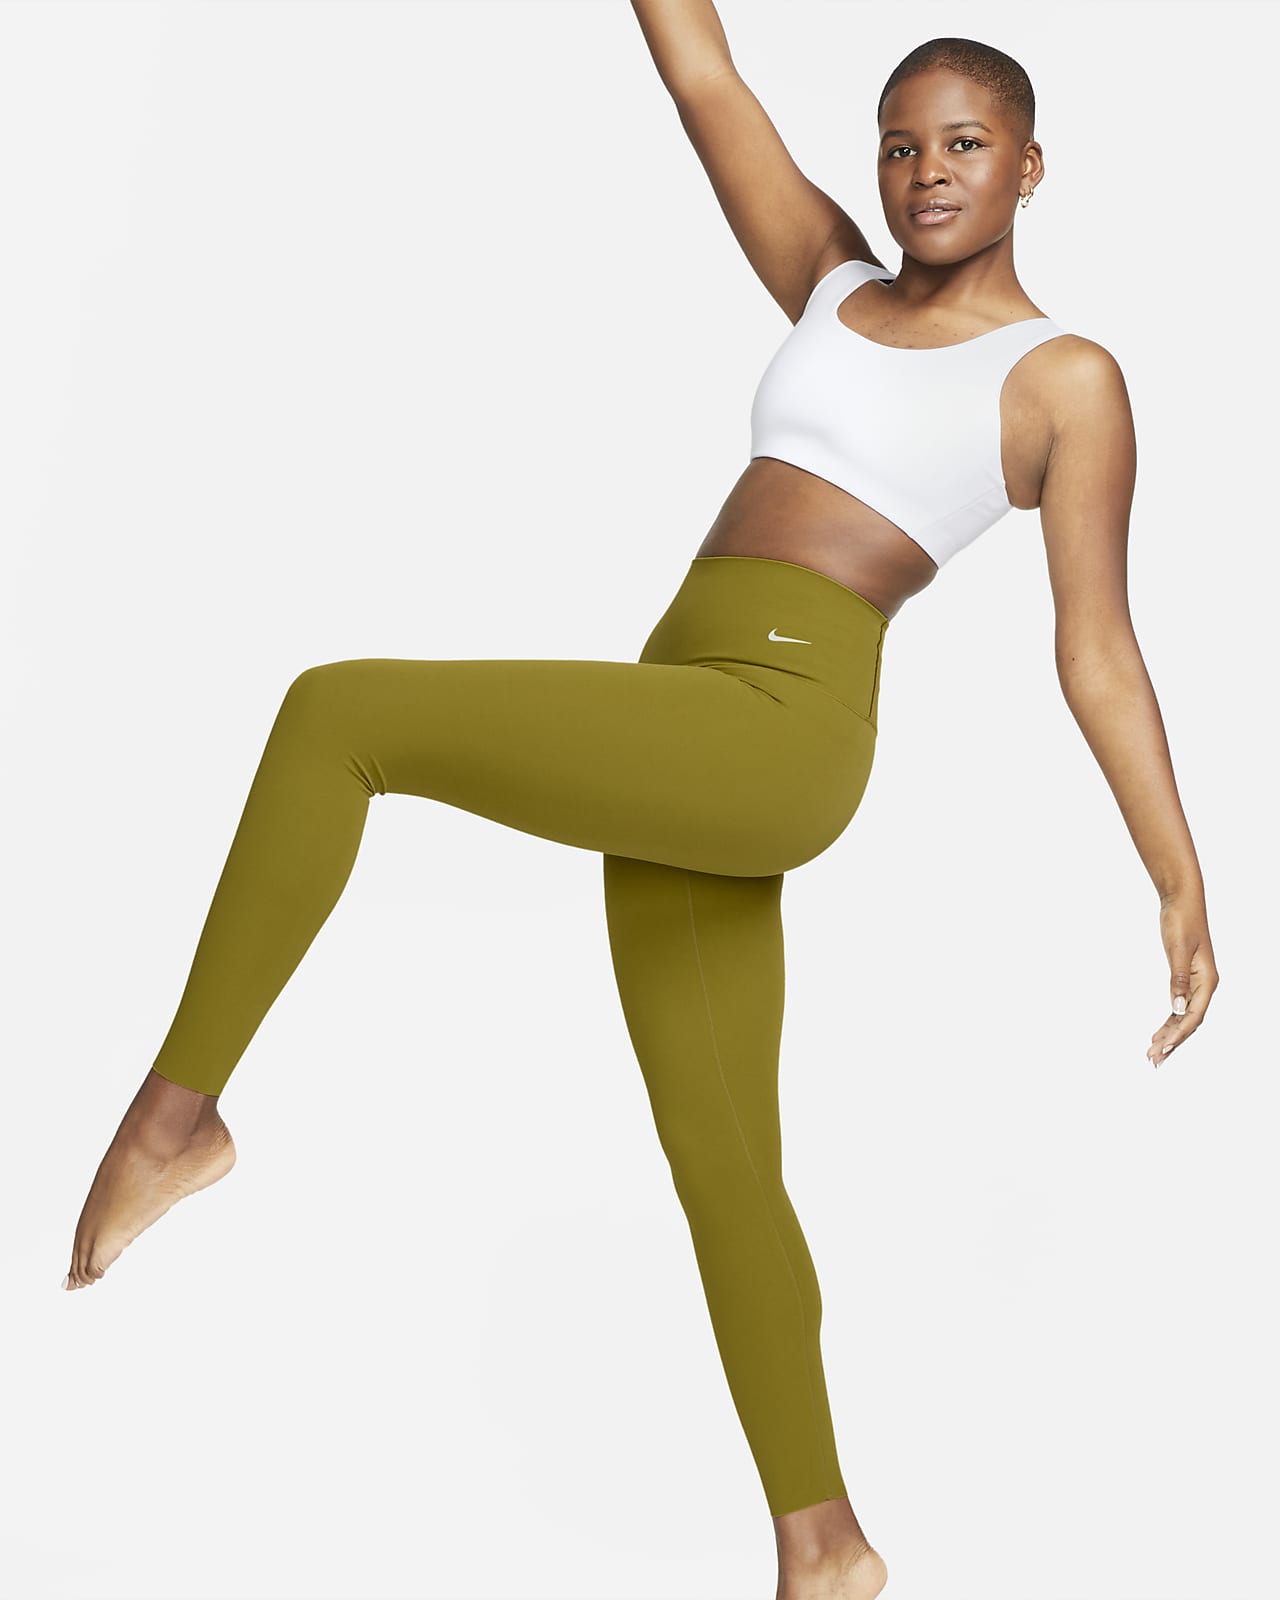 Nike Zenvy Women's Gentle-Support High-Waisted 7/8 Leggings. Nike